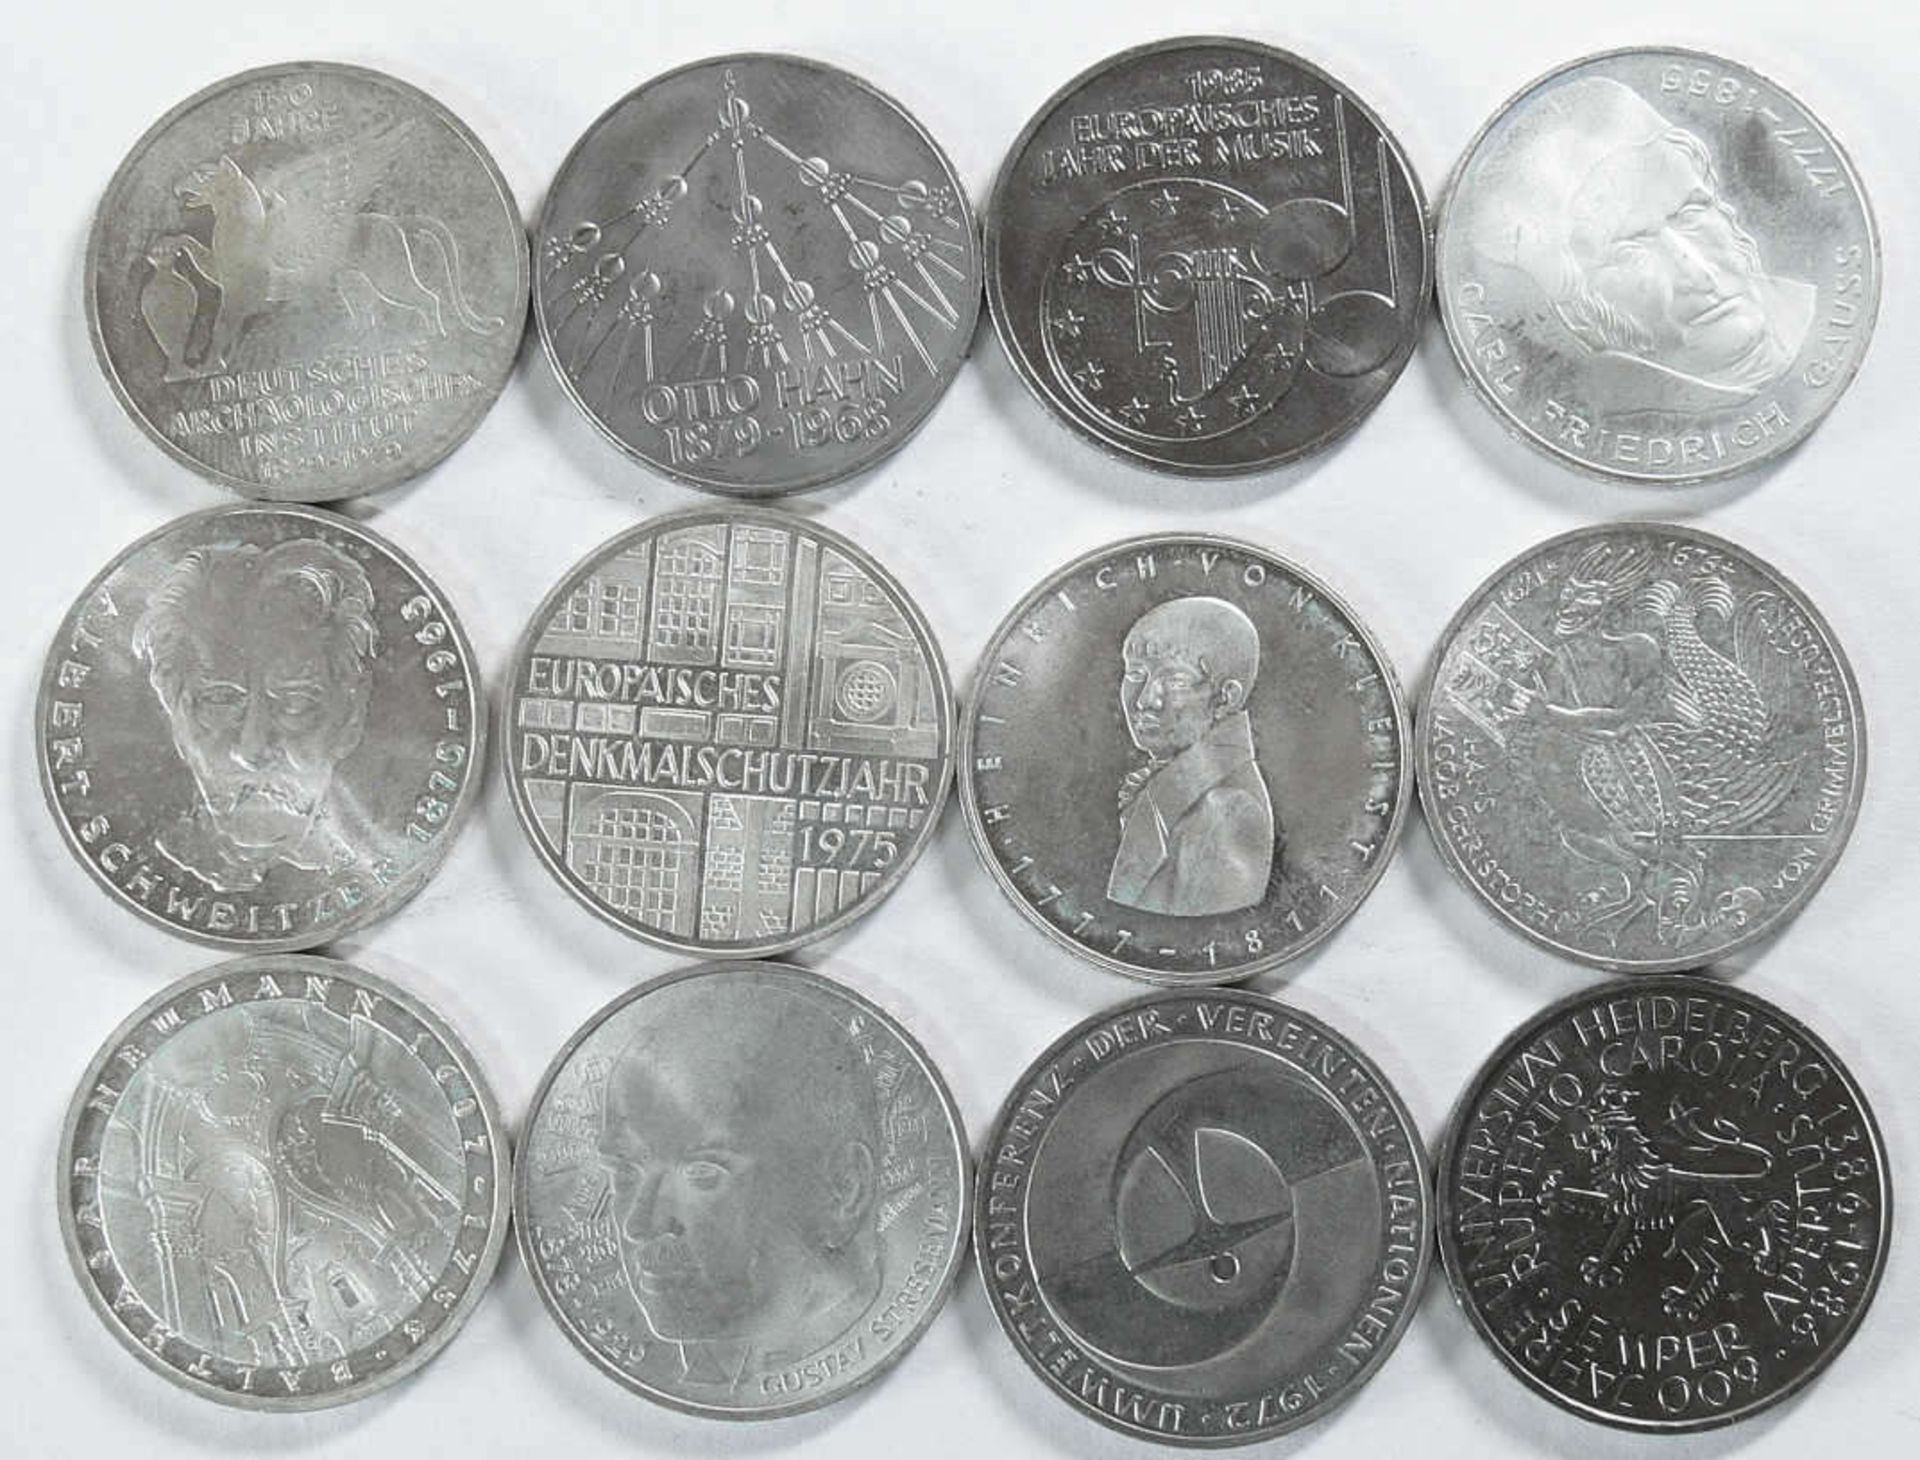 Deutschland, Lot 5.- DM - Silbermünzen. Insgesamt 12 Stück, davon 8 x Silber. Erhaltung: ss-vz.